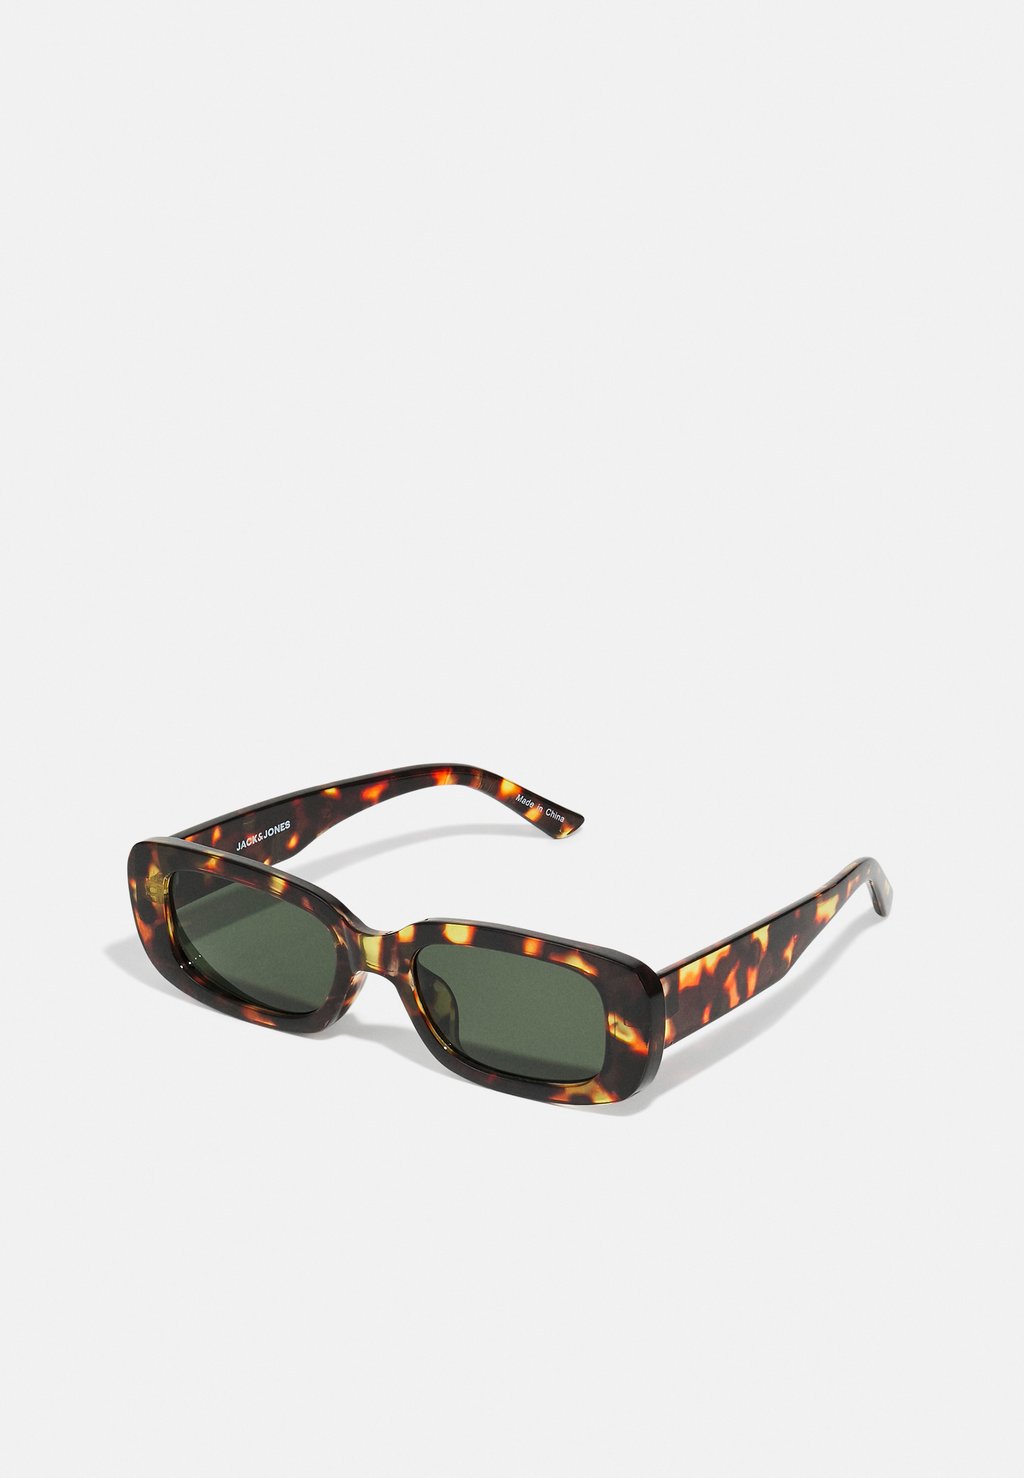 Солнцезащитные очки Jacabel Sunglasses Unisex Jack & Jones, цвет amber brown